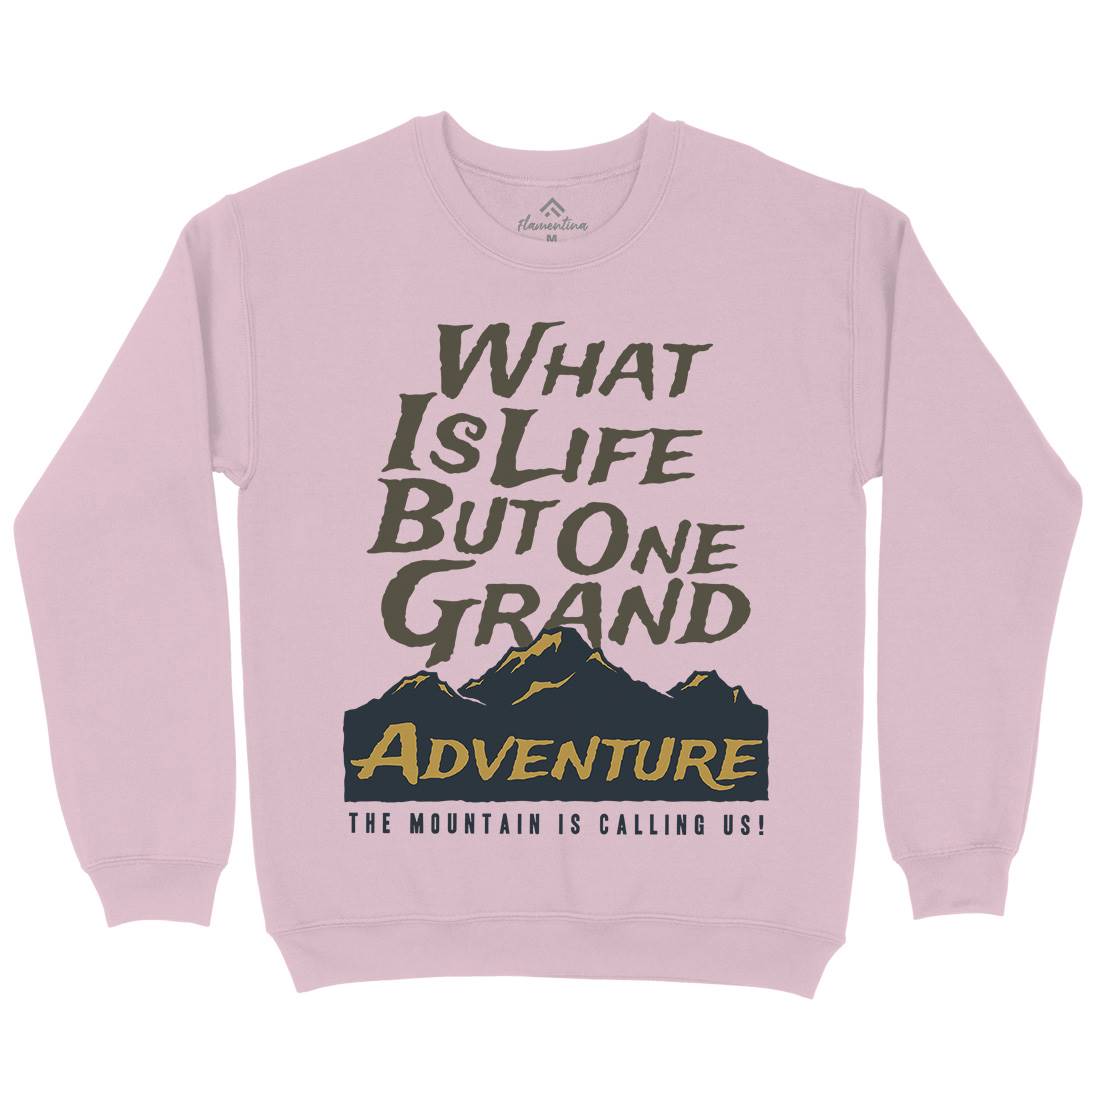 Great Adventure Kids Crew Neck Sweatshirt Nature A321